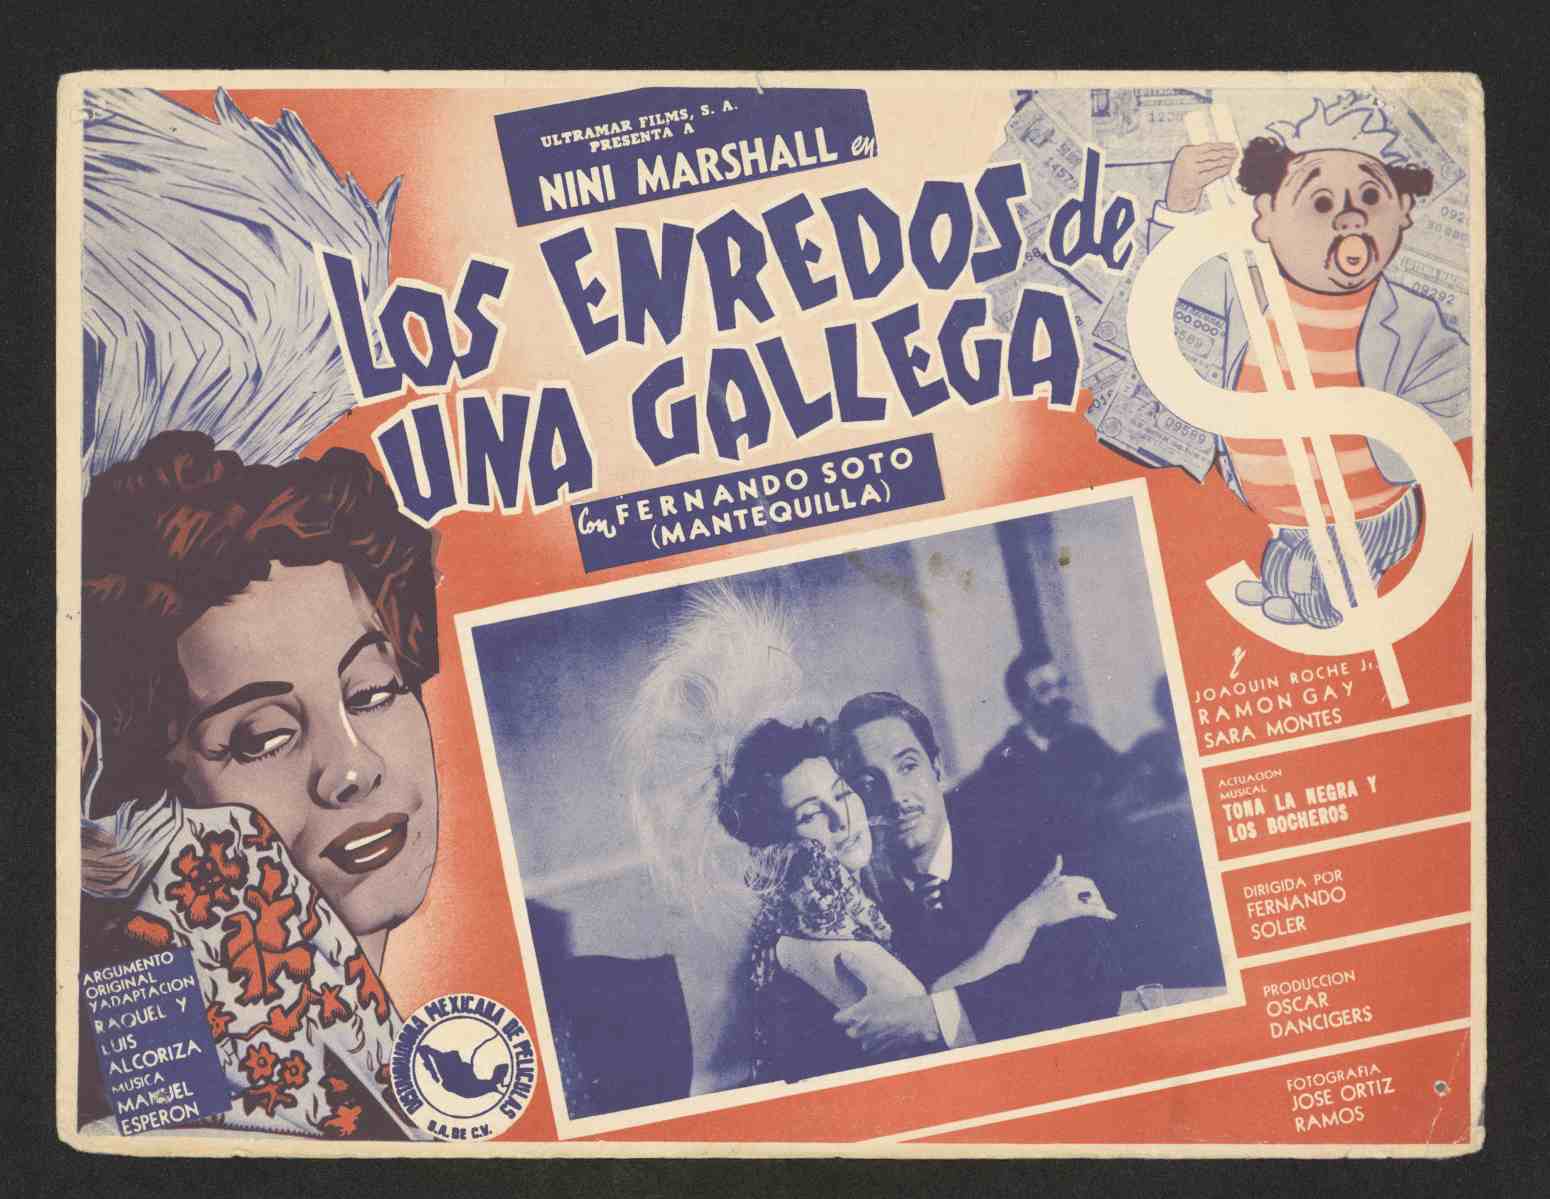 Los enredos de una gallega, ca. 1951